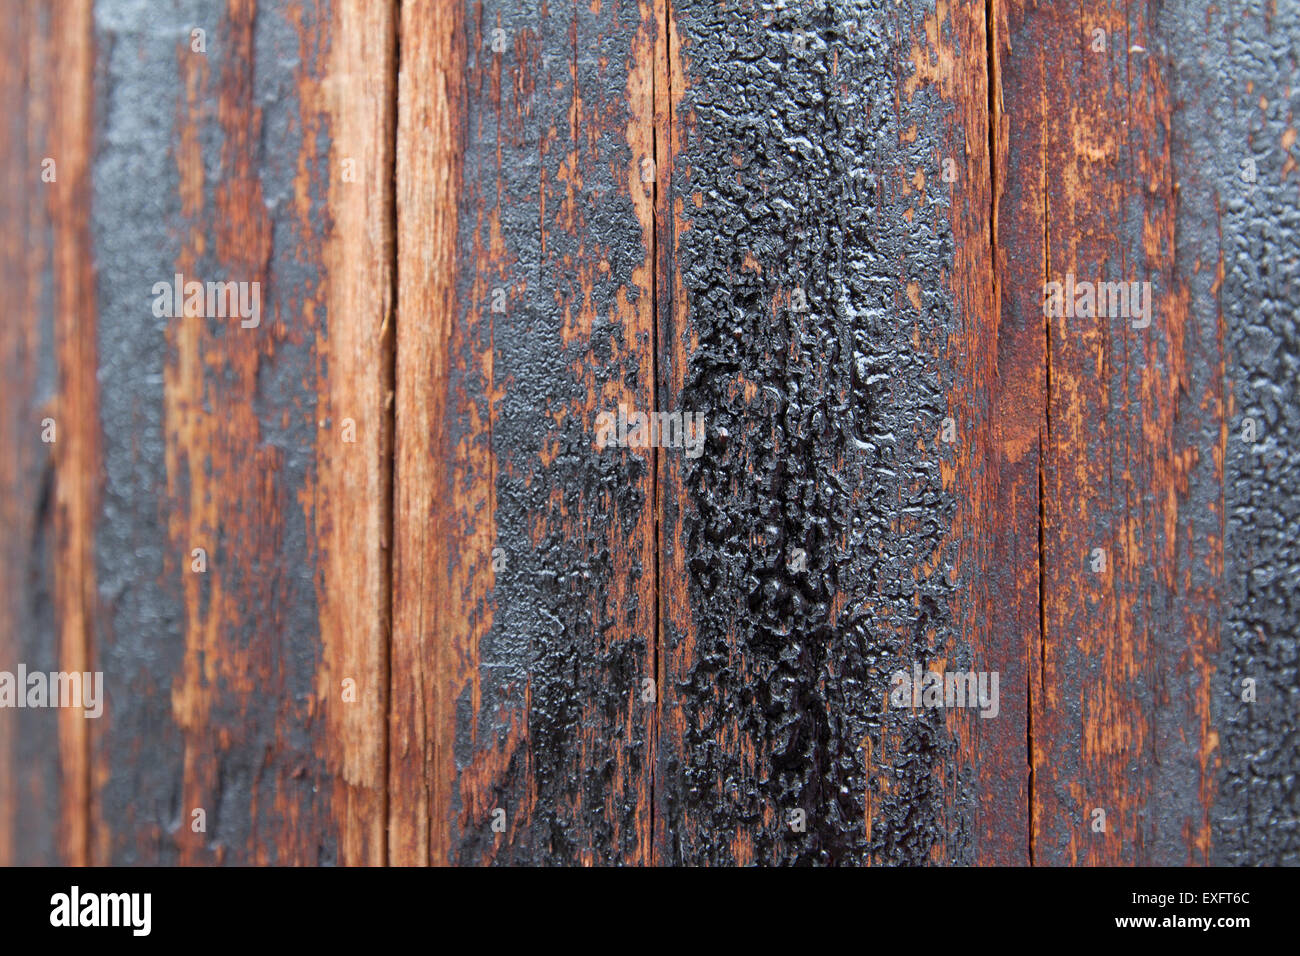 Image libre: Texture d'une surface en bois sur laquelle se trouve du goudron  d'huile séché